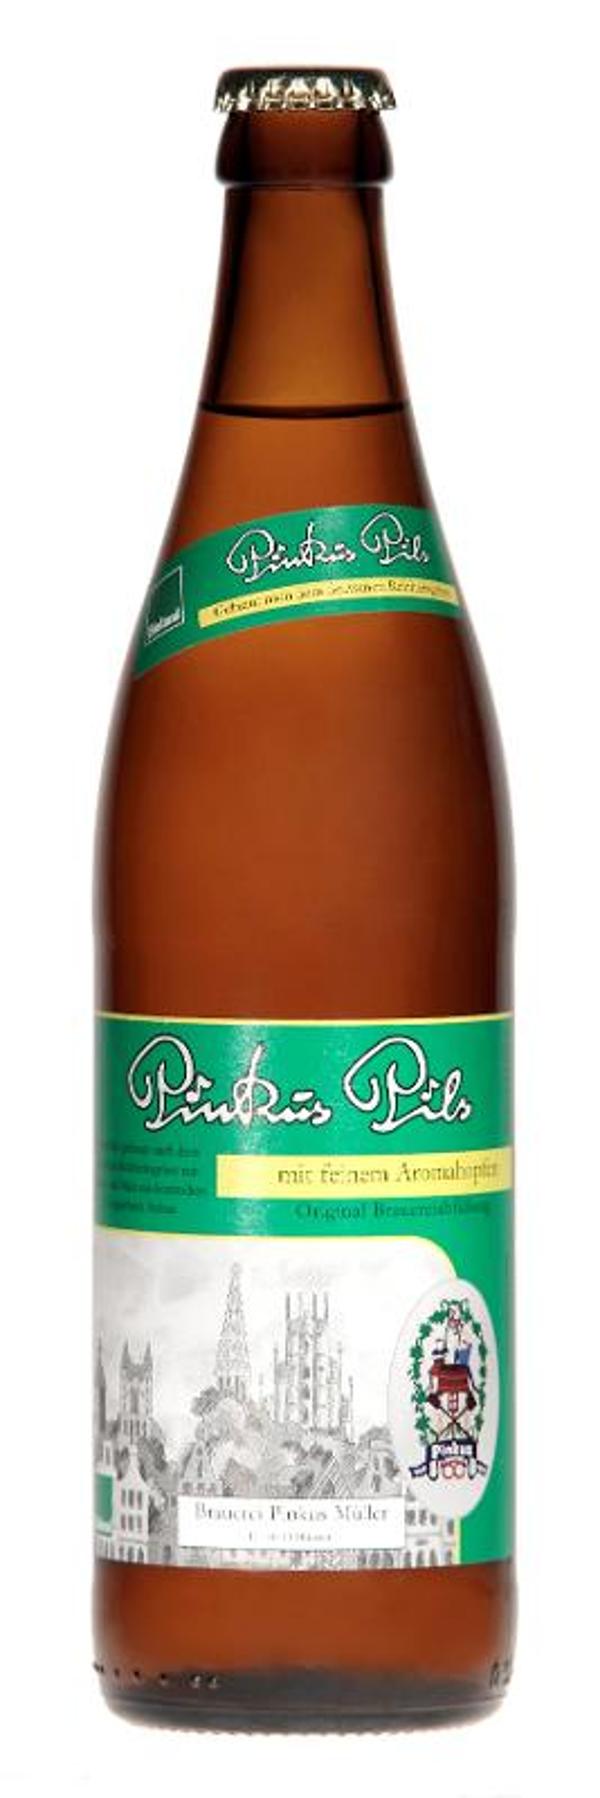 Produktfoto zu VPE Bier Pils feinherb 8x0,5 l Pinkus